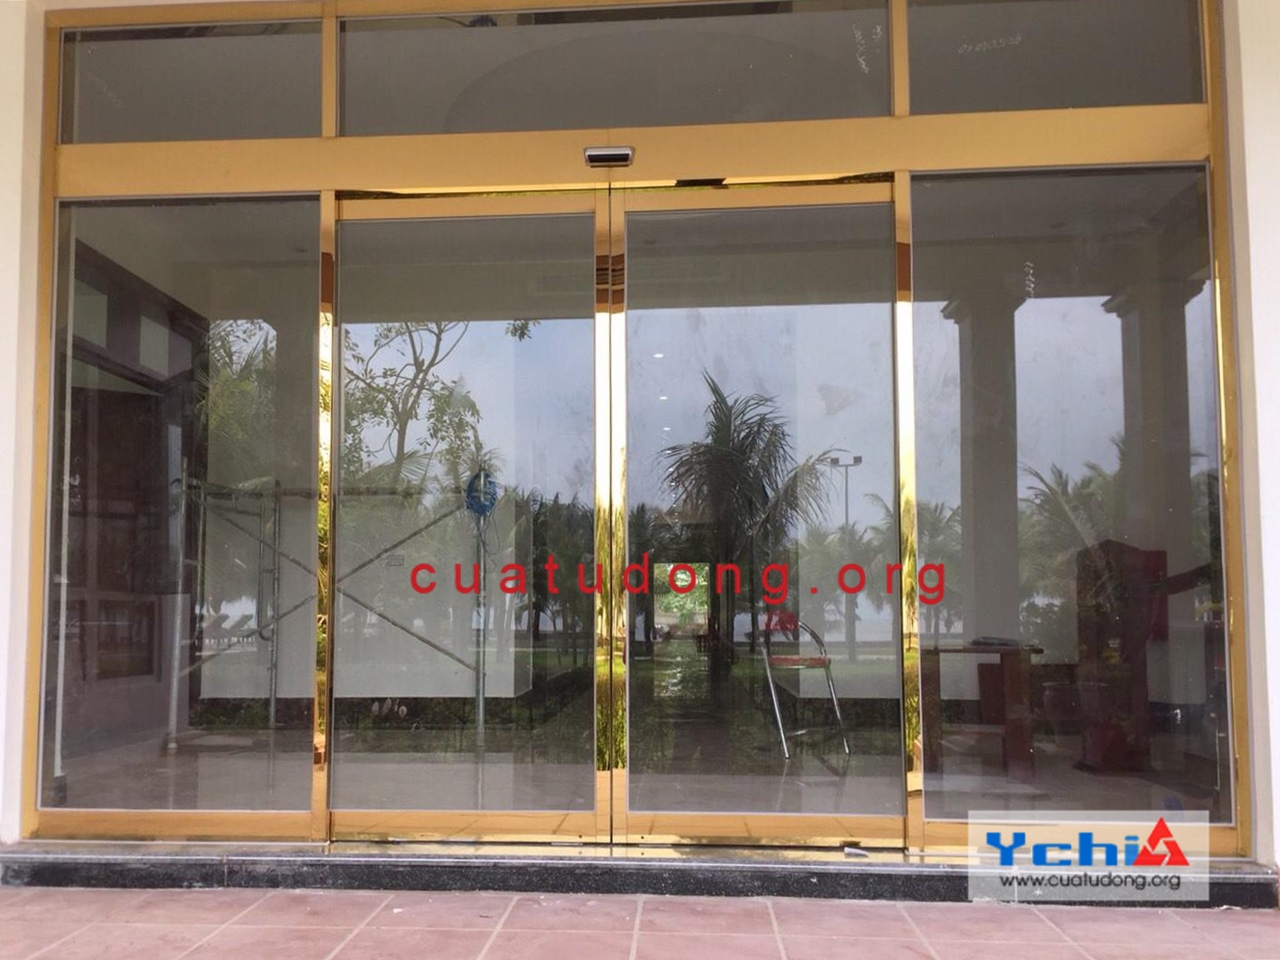 Ychi Việt Nam tự hào địa chỉ cung cấp và lắp đặt cửa tự động Plus 2021 tốt nhất thị trường